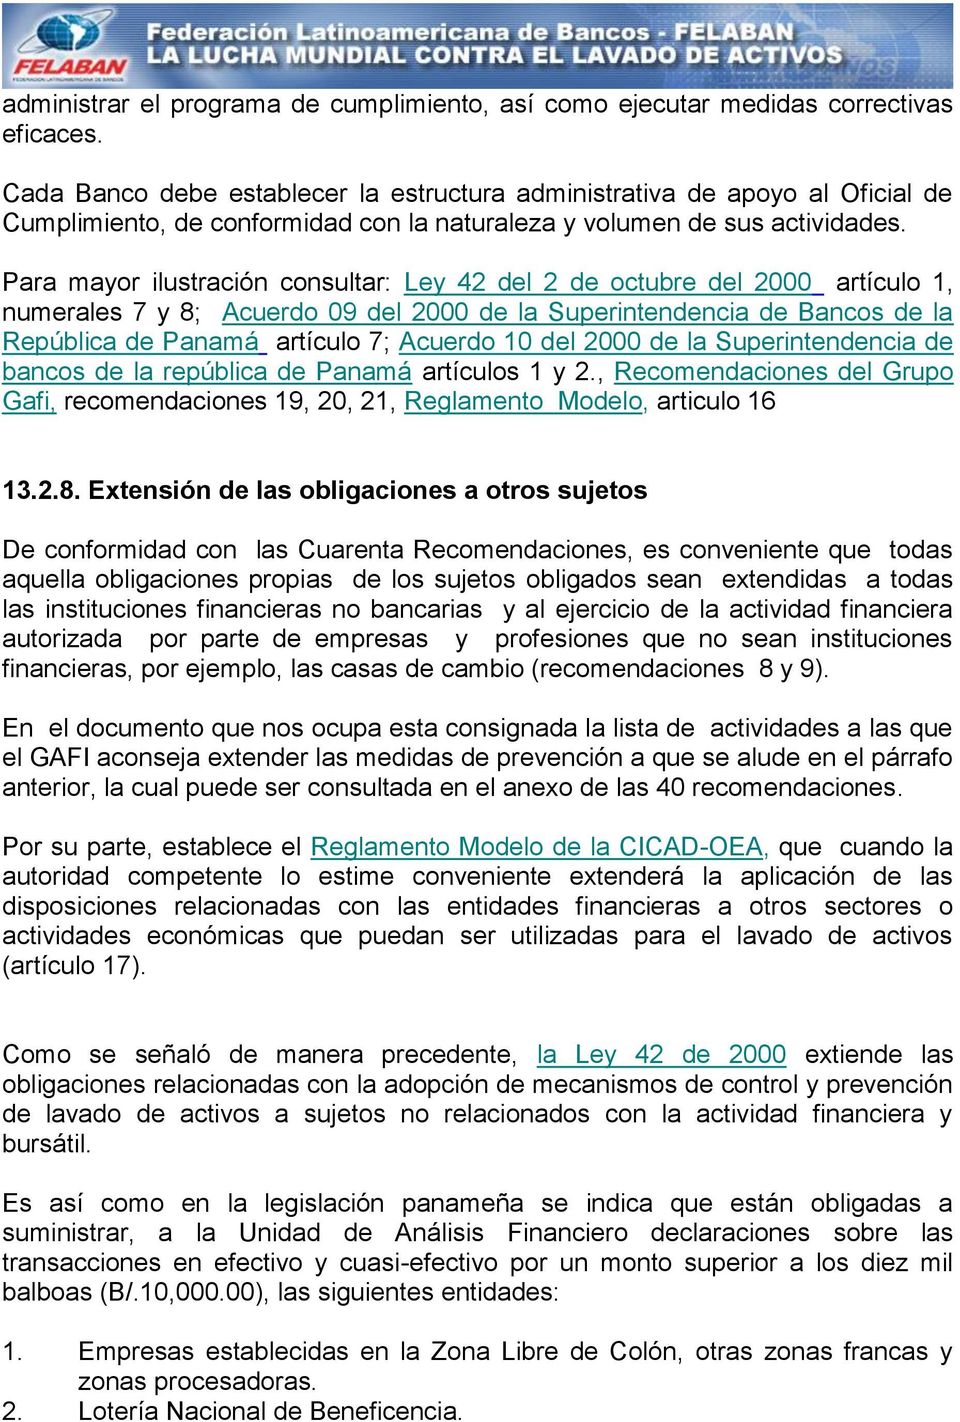 Para mayor ilustración consultar: Ley 42 del 2 de octubre del 2000 artículo 1, numerales 7 y 8; Acuerdo 09 del 2000 de la Superintendencia de Bancos de la República de Panamá artículo 7; Acuerdo 10